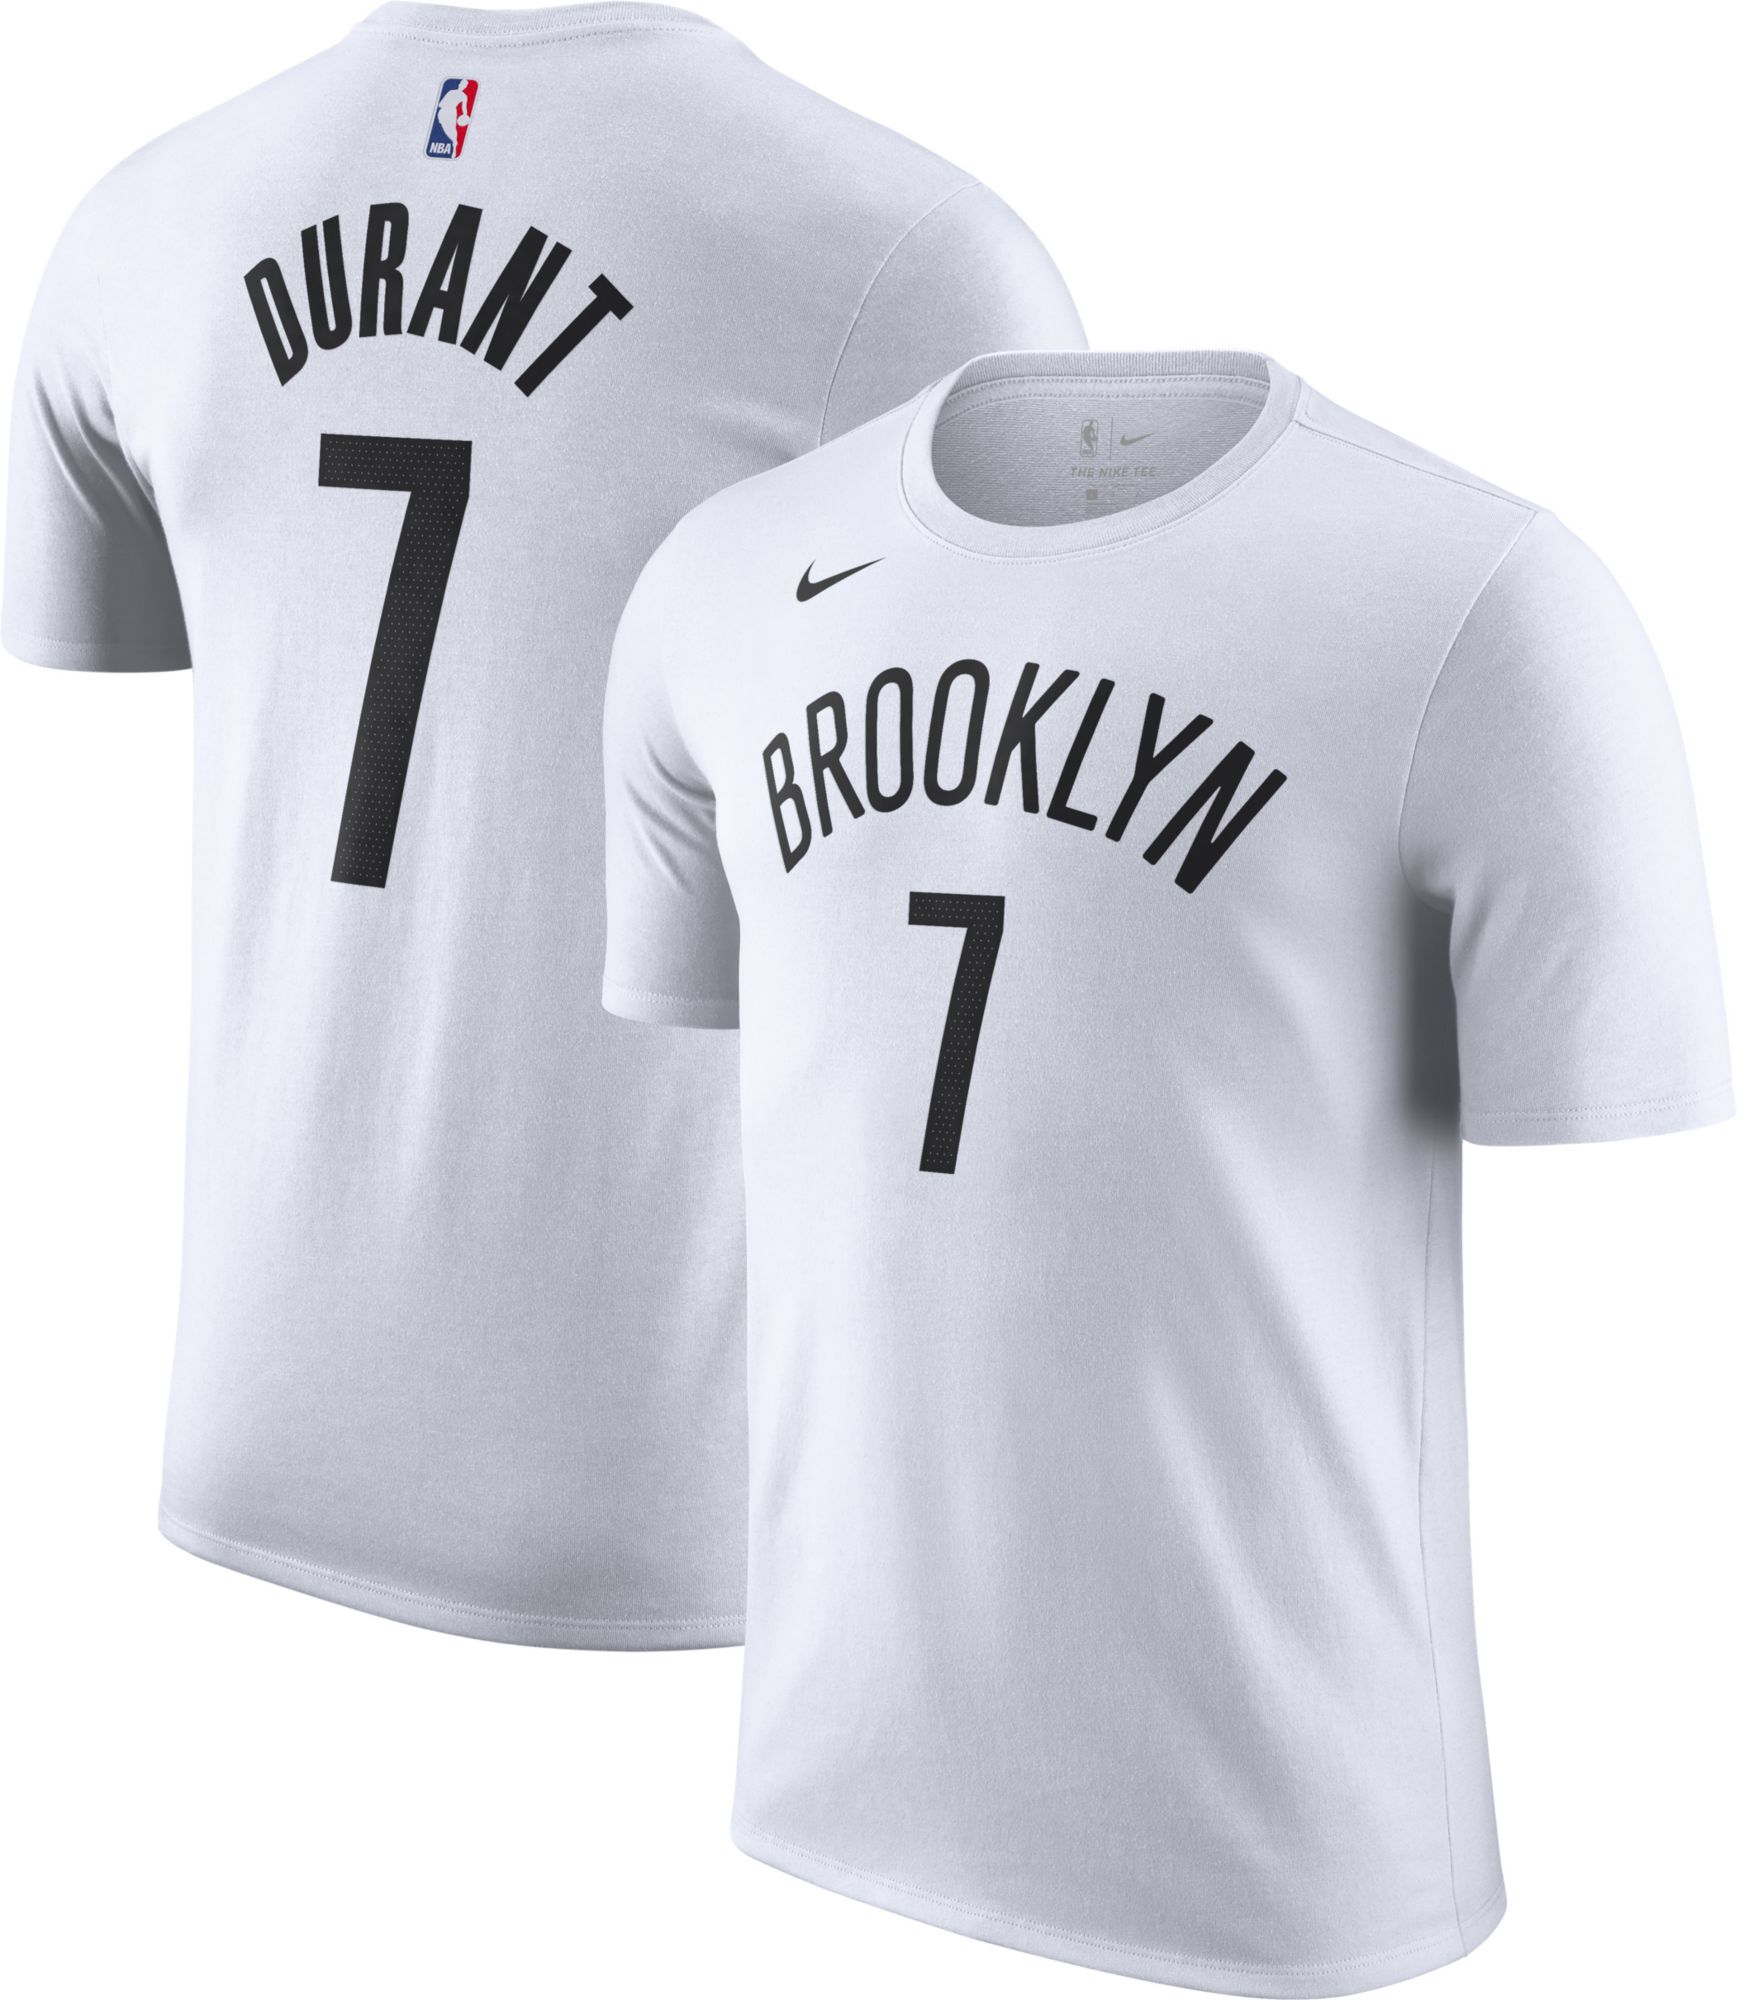 White Nike NBA Brooklyn Nets Durant #7 Swingman Jersey